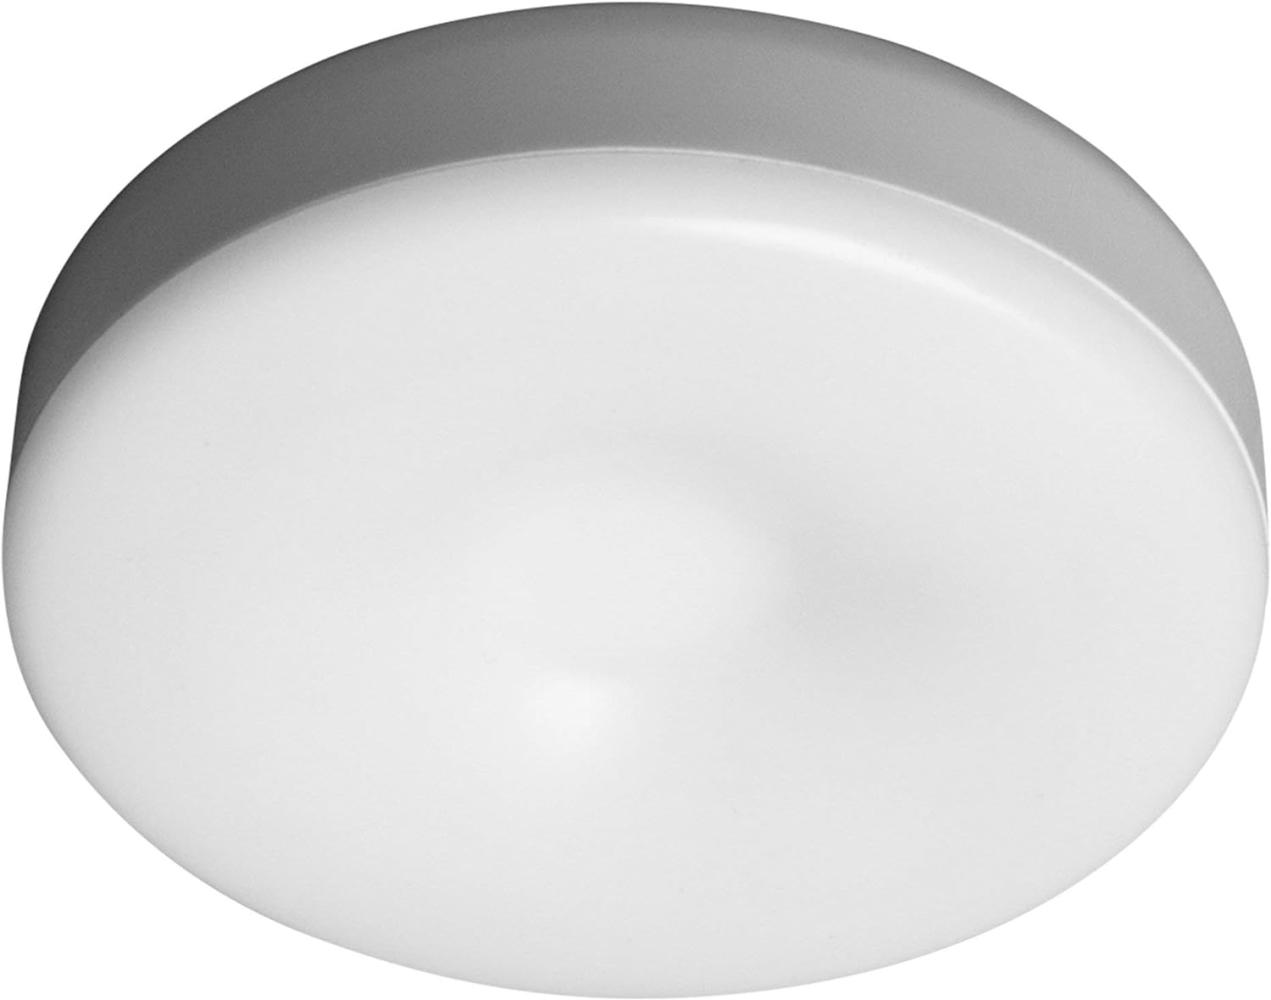 LEDVANCE DOT-it Touch Slim, white Bild 1